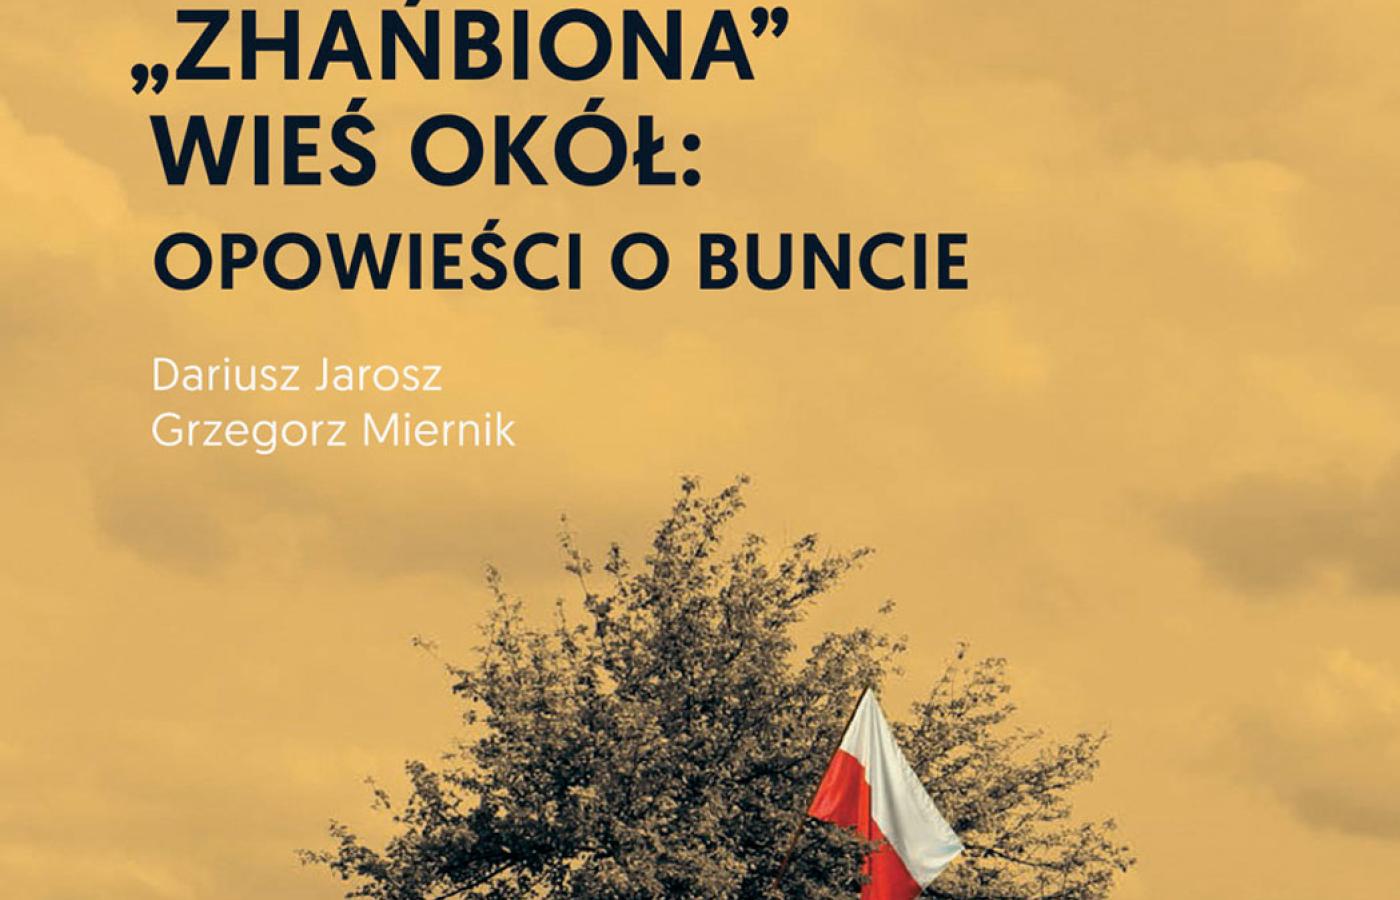 Dariusz Jarosz, Grzegorz Miernik, „Zhańbiona” wieś Okół: opowieści o buncie